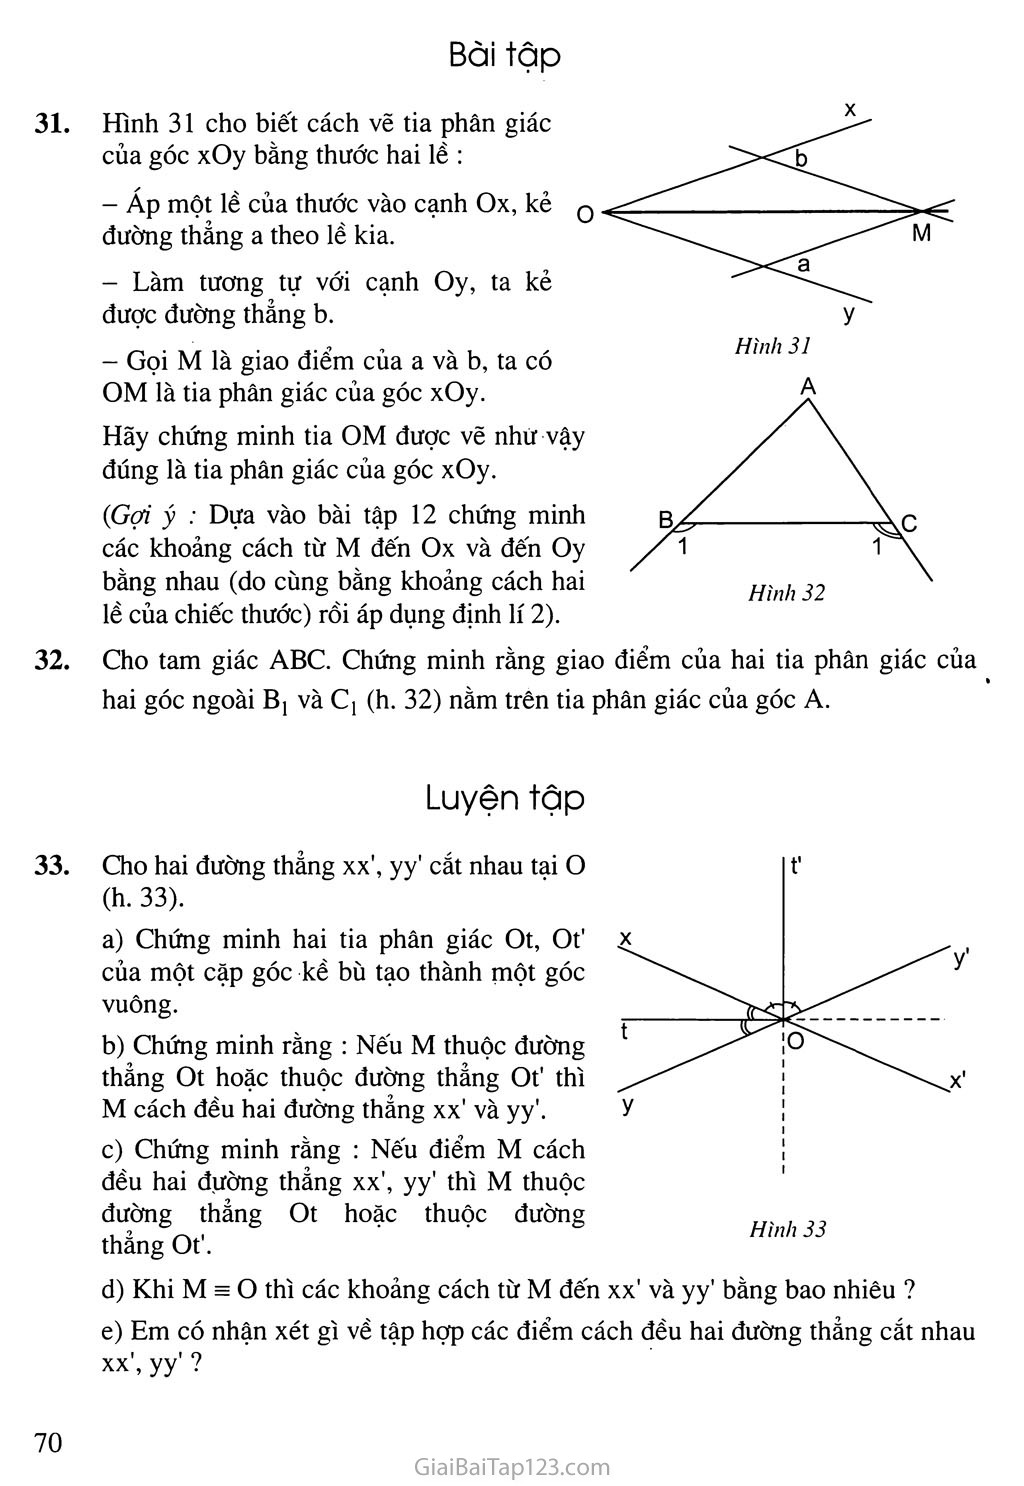 Bài 5. Tính chất tia phân giác của một góc trang 3